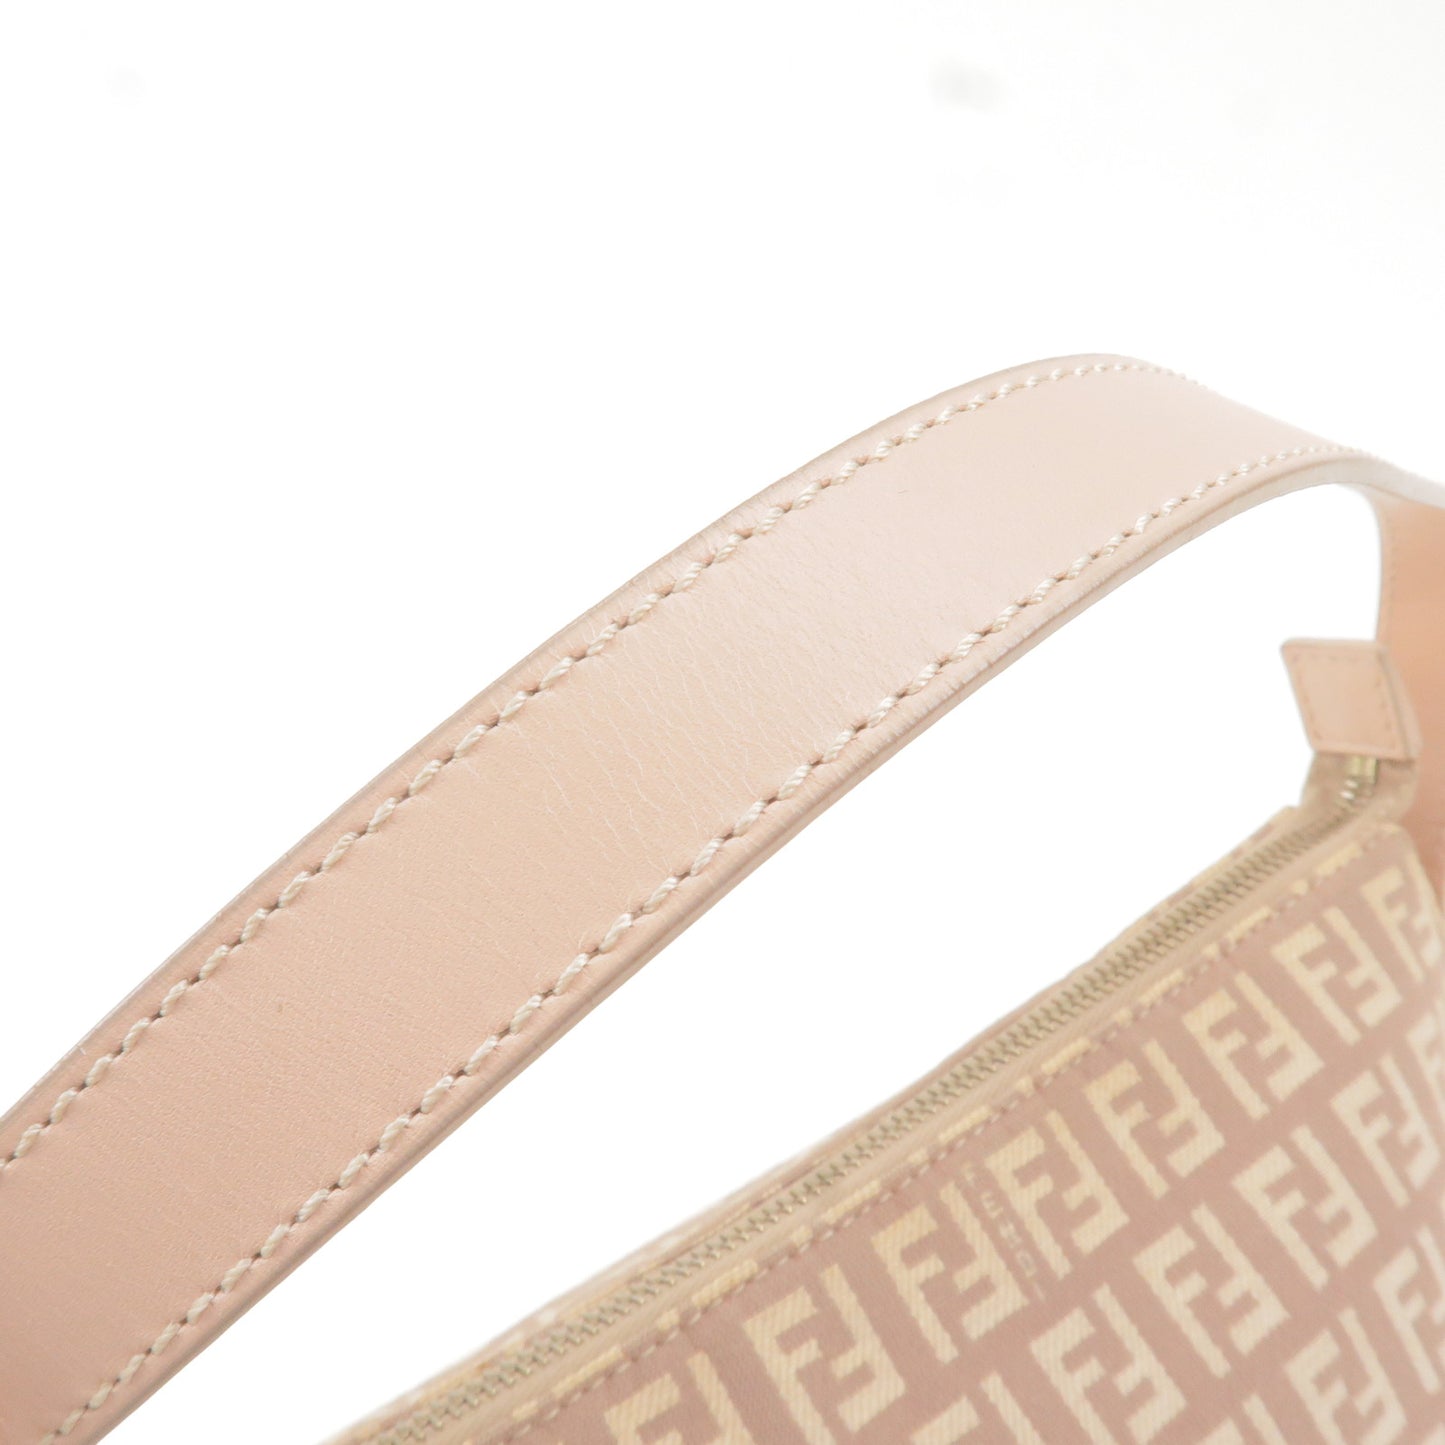 FENDI Zucchino Canvas Leather Shoulder Bag Pink Beige 8BR444